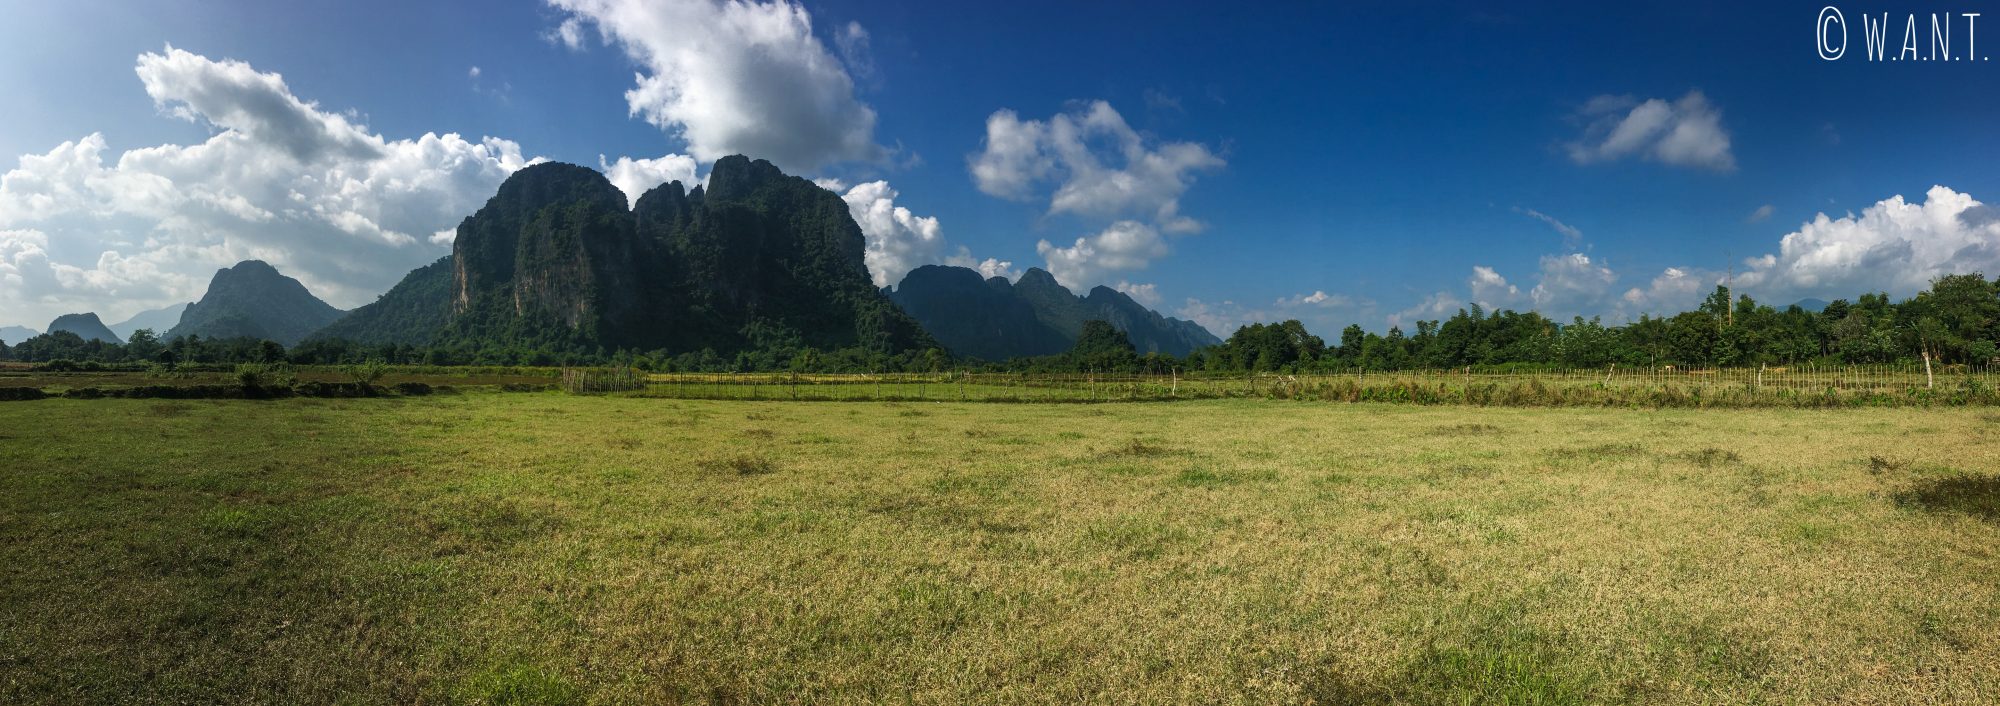 Panorama sur les rizières et les pics karstiques de Vang Vieng